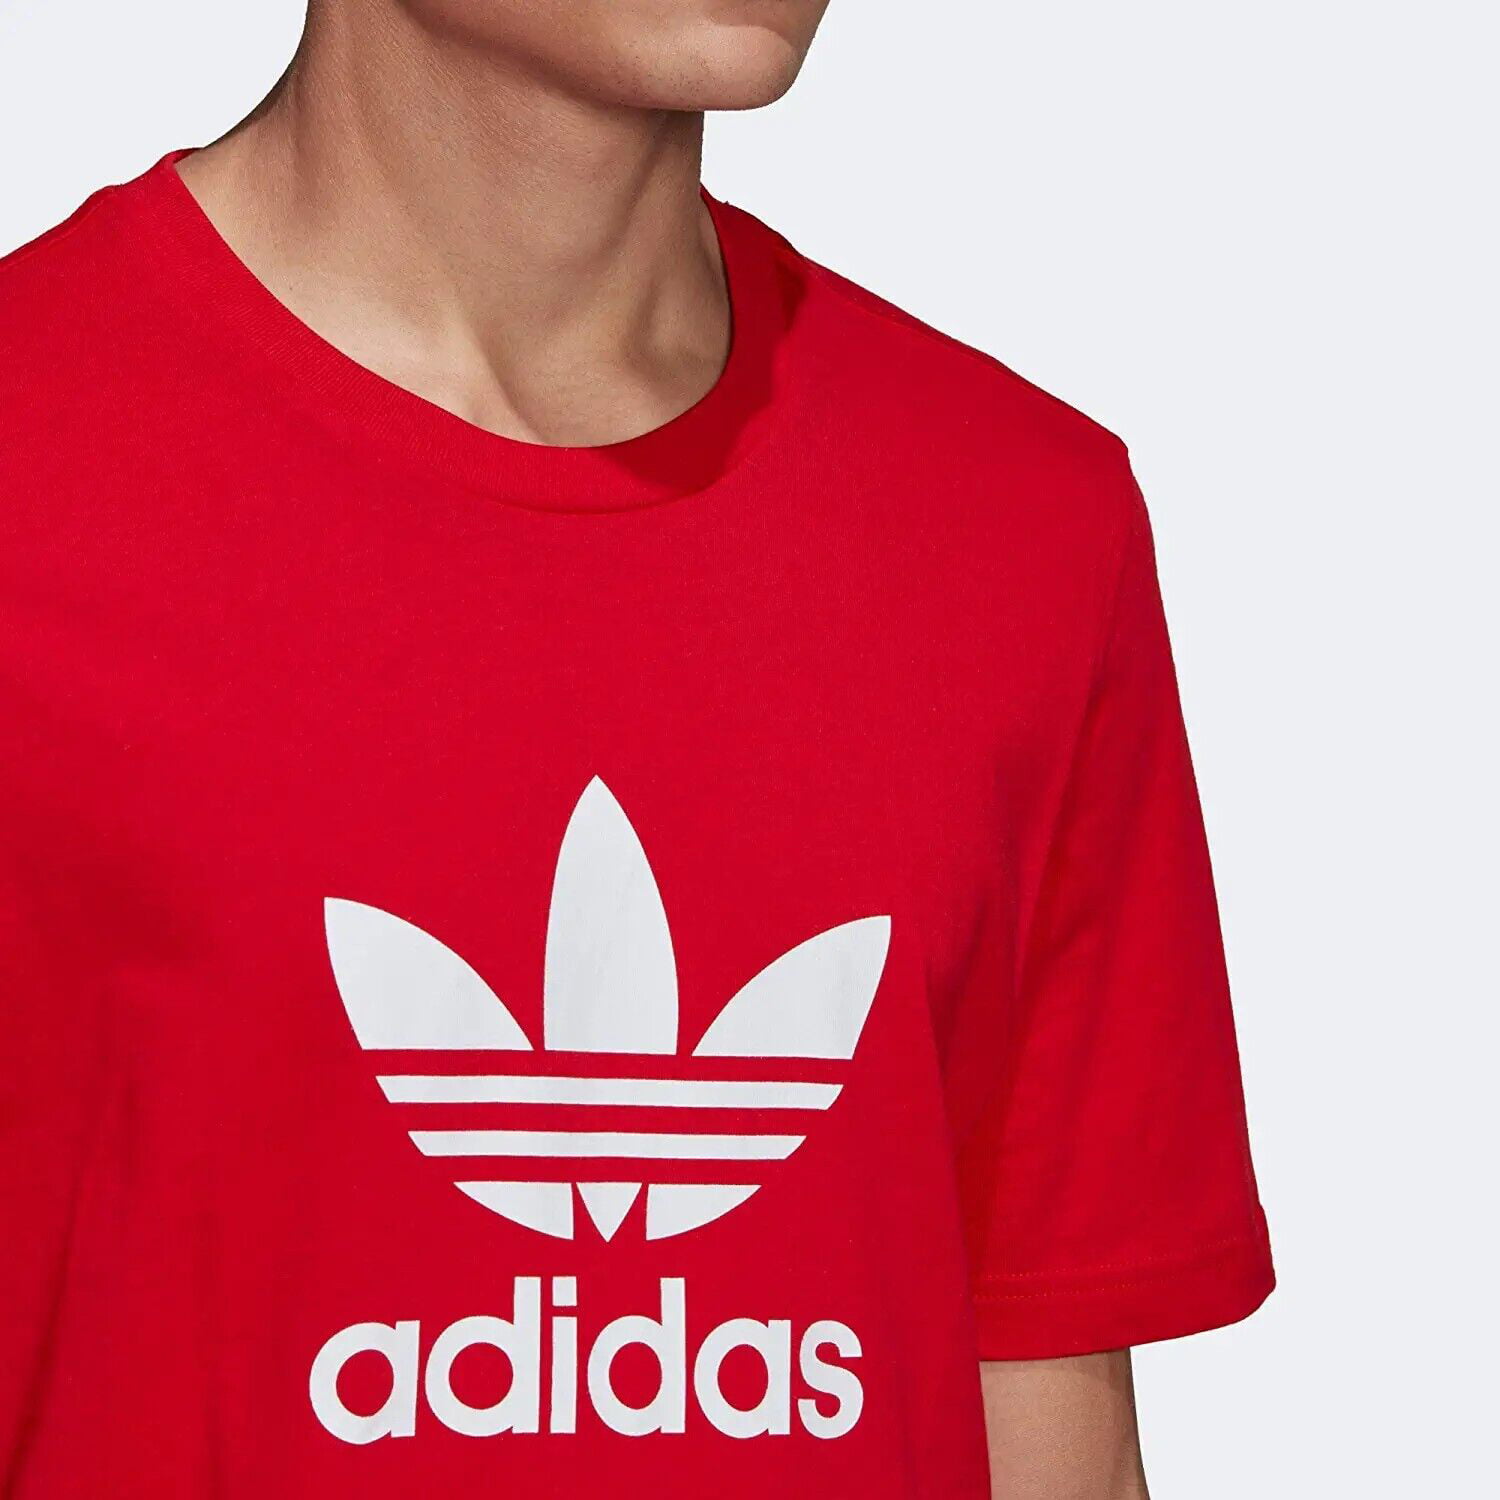 adidas Originals mens Scarlet Red Medium Trefoil T-Shirt Size